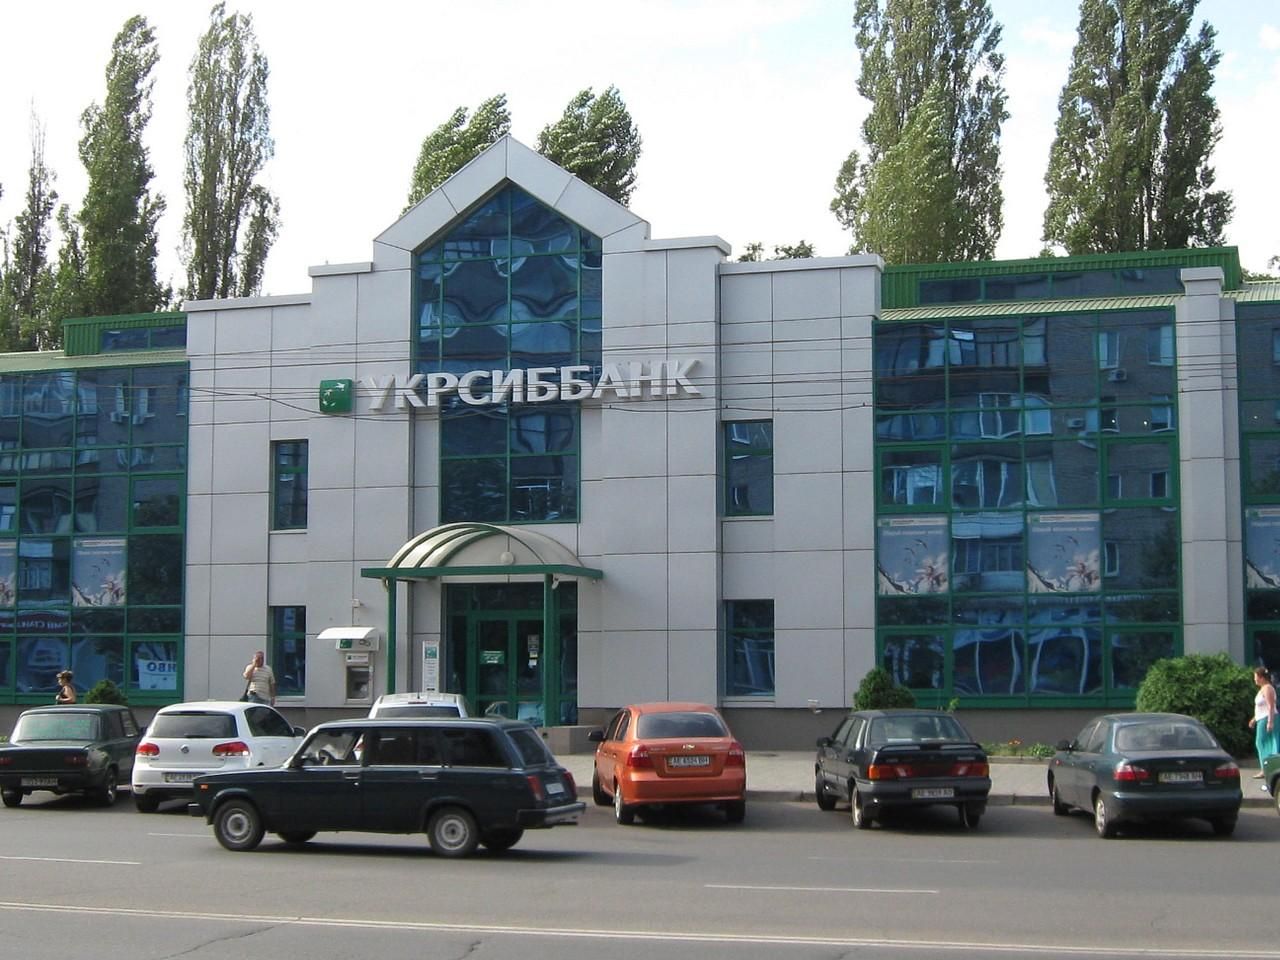 Експерт: При менеджменті Ярославського в "УкрСиббанку" почалася криза неплатежів